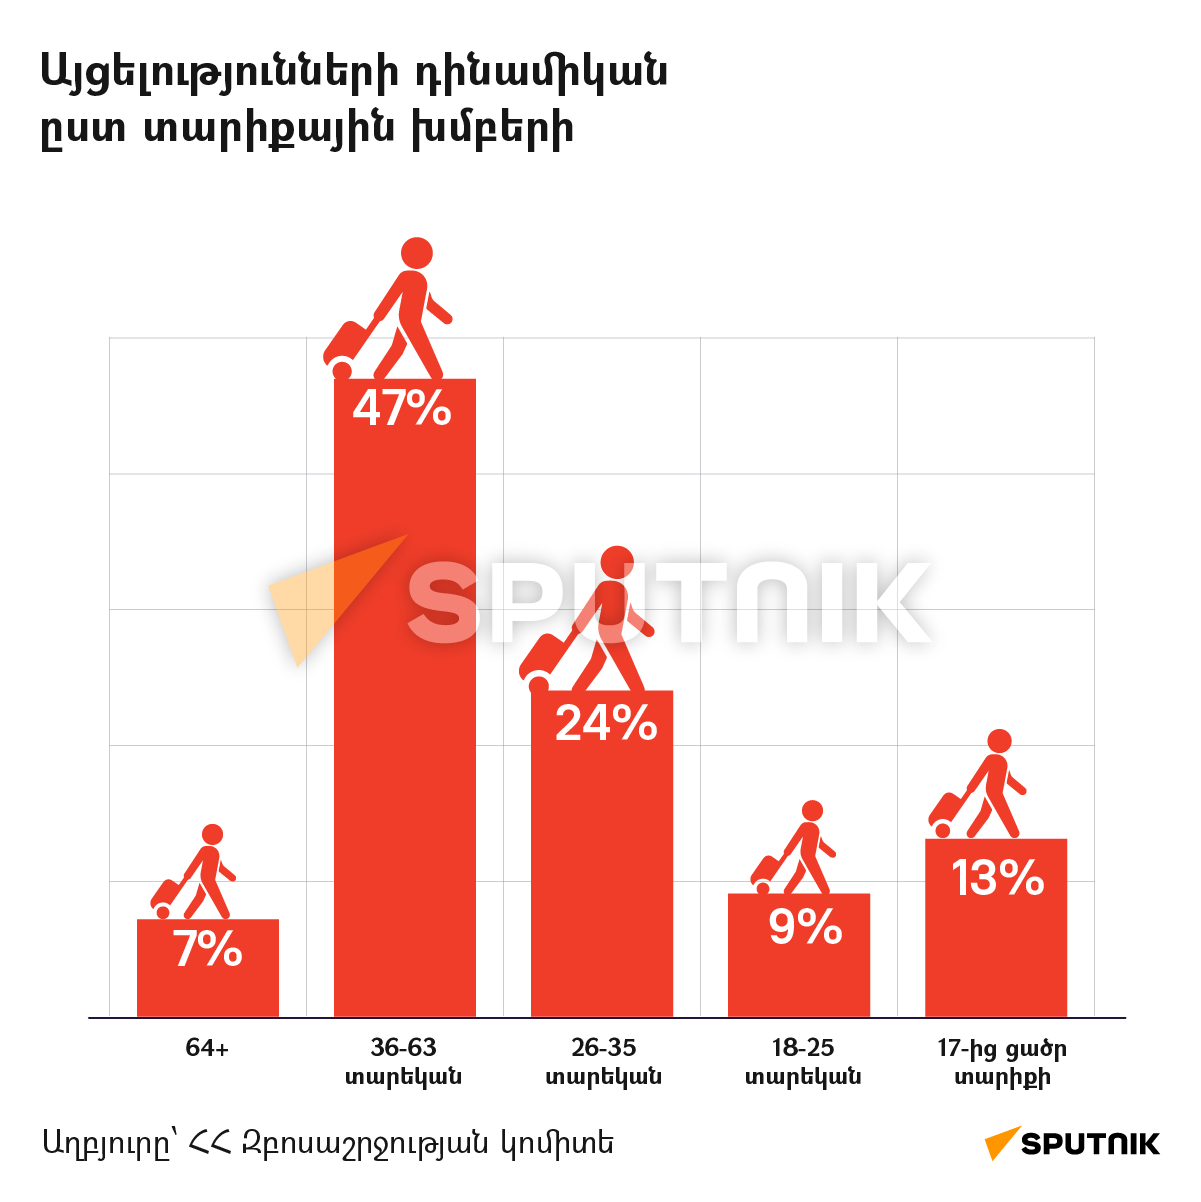 Այցելությունների դինամիկան ըստ տարիքային խմբերի - Sputnik Արմենիա